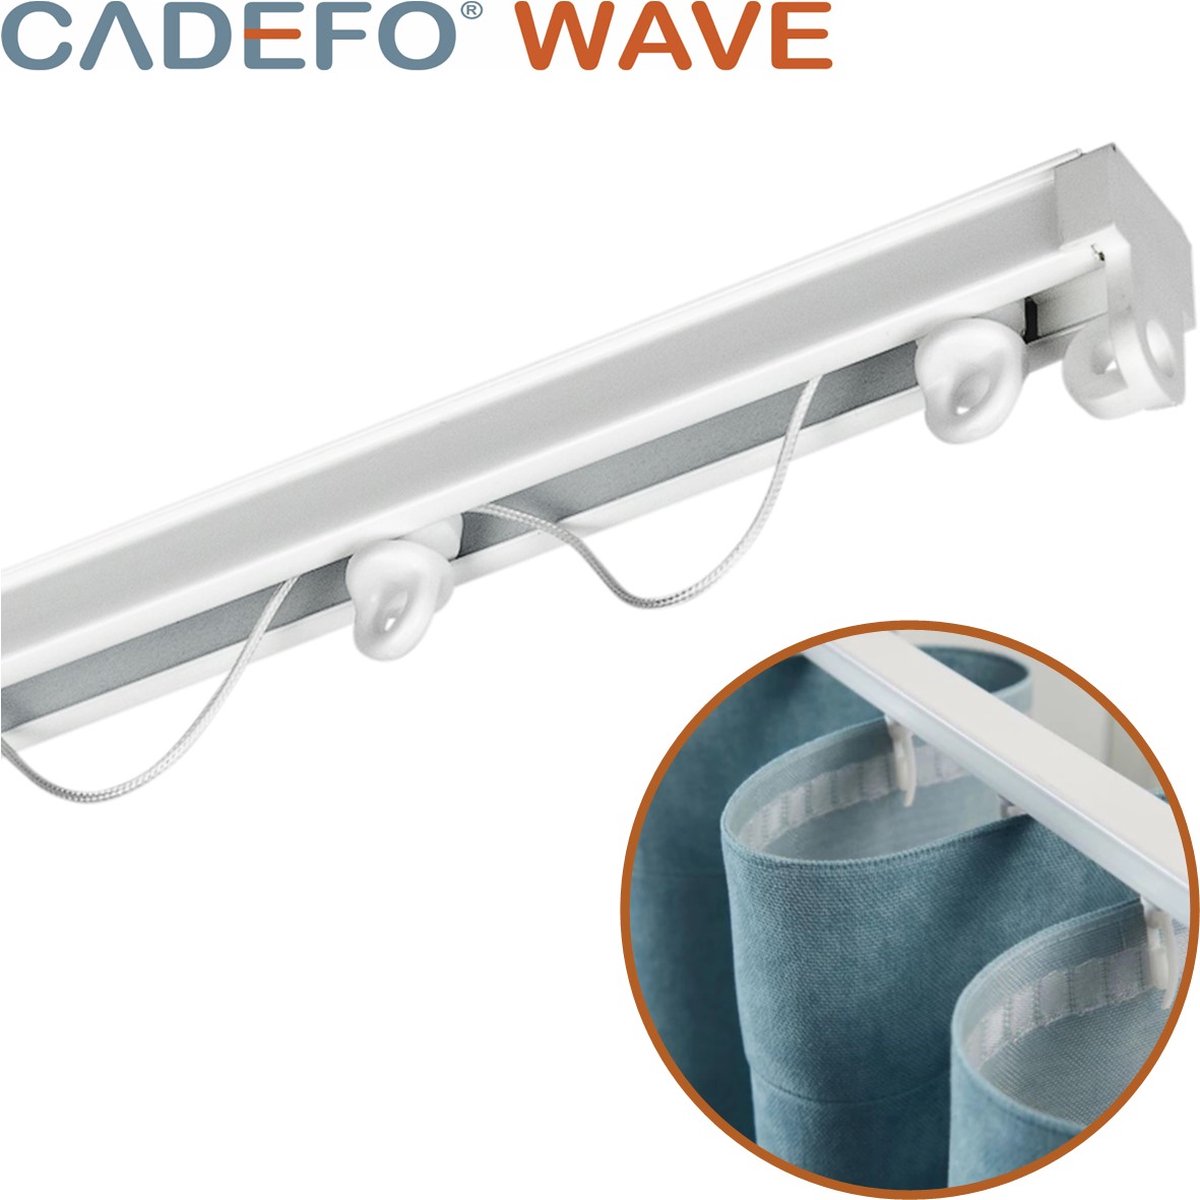 CADEFO WAVE (301 - 350 cm) Gordijnrails - Compleet op maat! - UIT 1 STUK - Leverbaar tot 6 meter - Plafondbevestiging - Lengte 348 cm